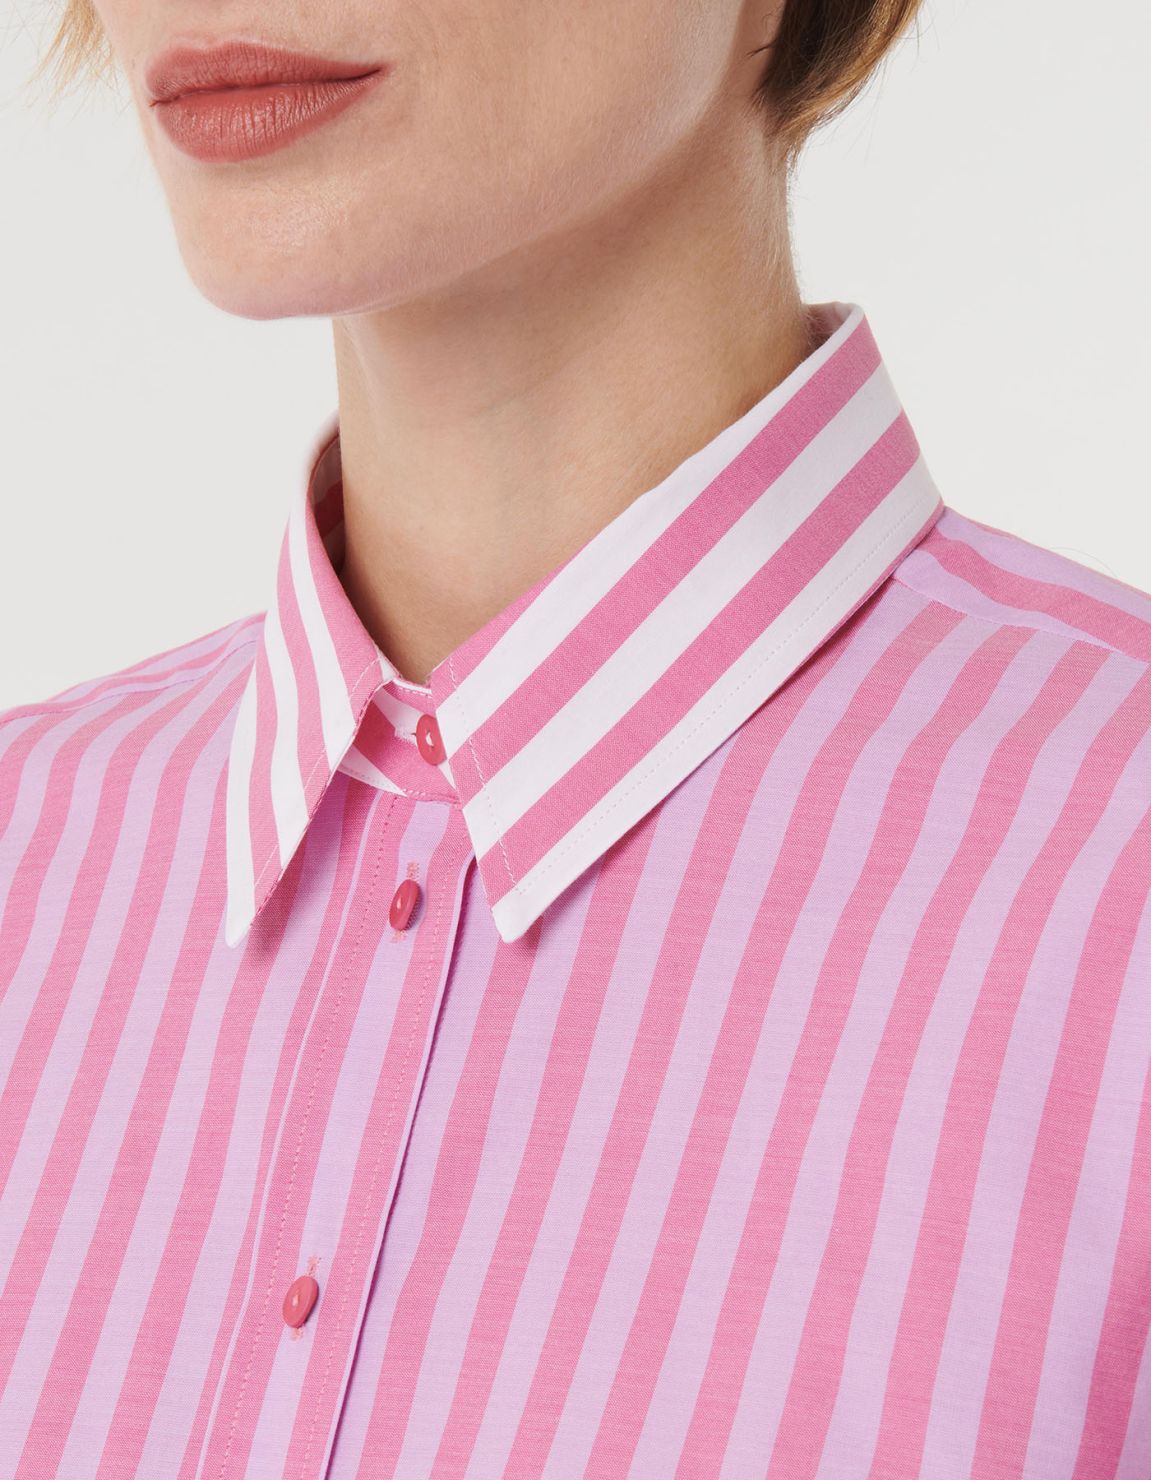 Shirt Dark Pink Cotton Stripe Over 2